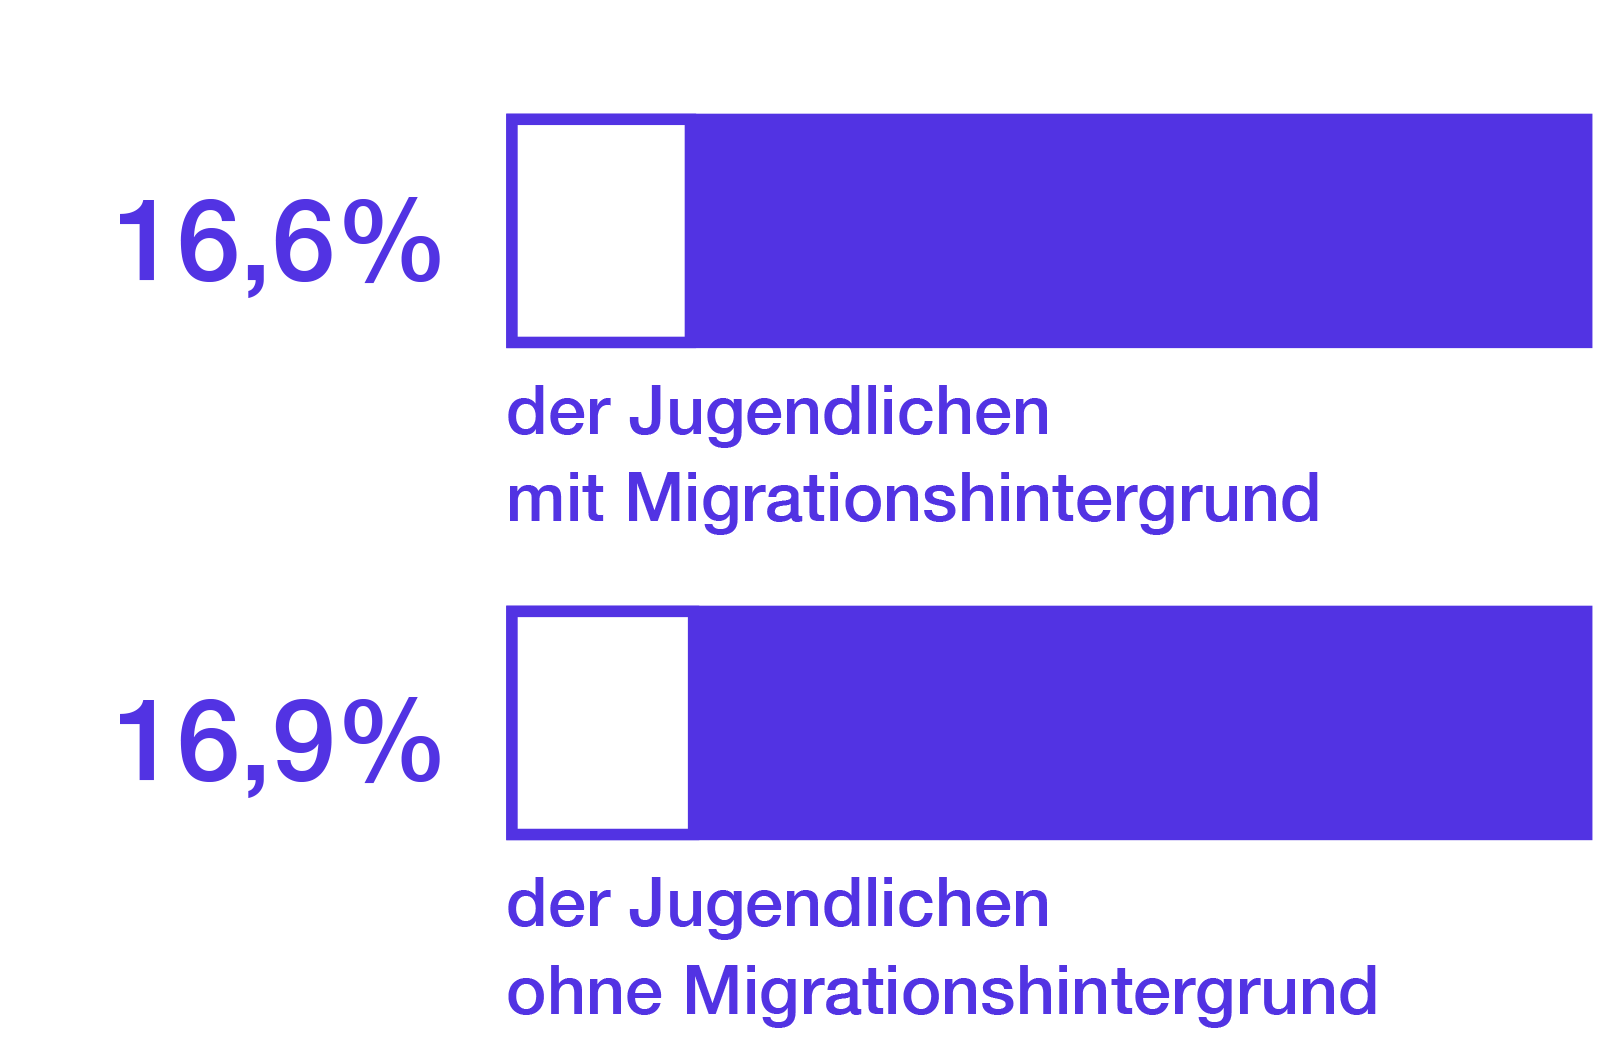 16,6% der Jugendlichen mit Migrationshintergrund. 16,9% der Jugendlichen ohne Migrationshintergrund.